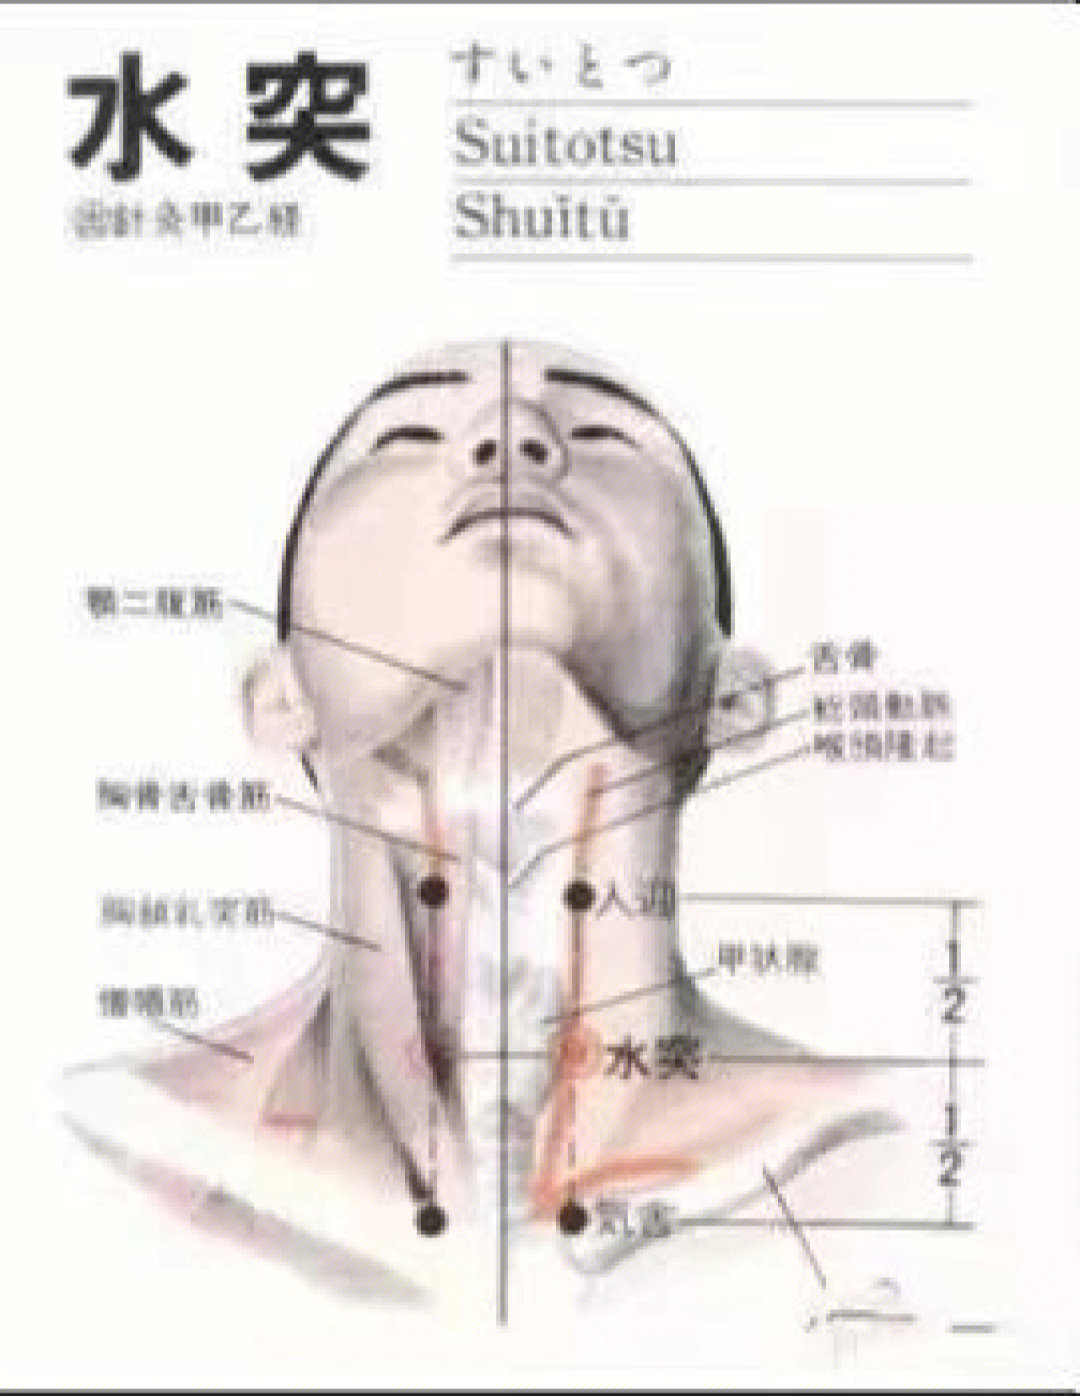 有颈阔肌,在环状软骨外侧,胸锁乳突肌与肩胛舌骨肌上腹的交叉点,外侧